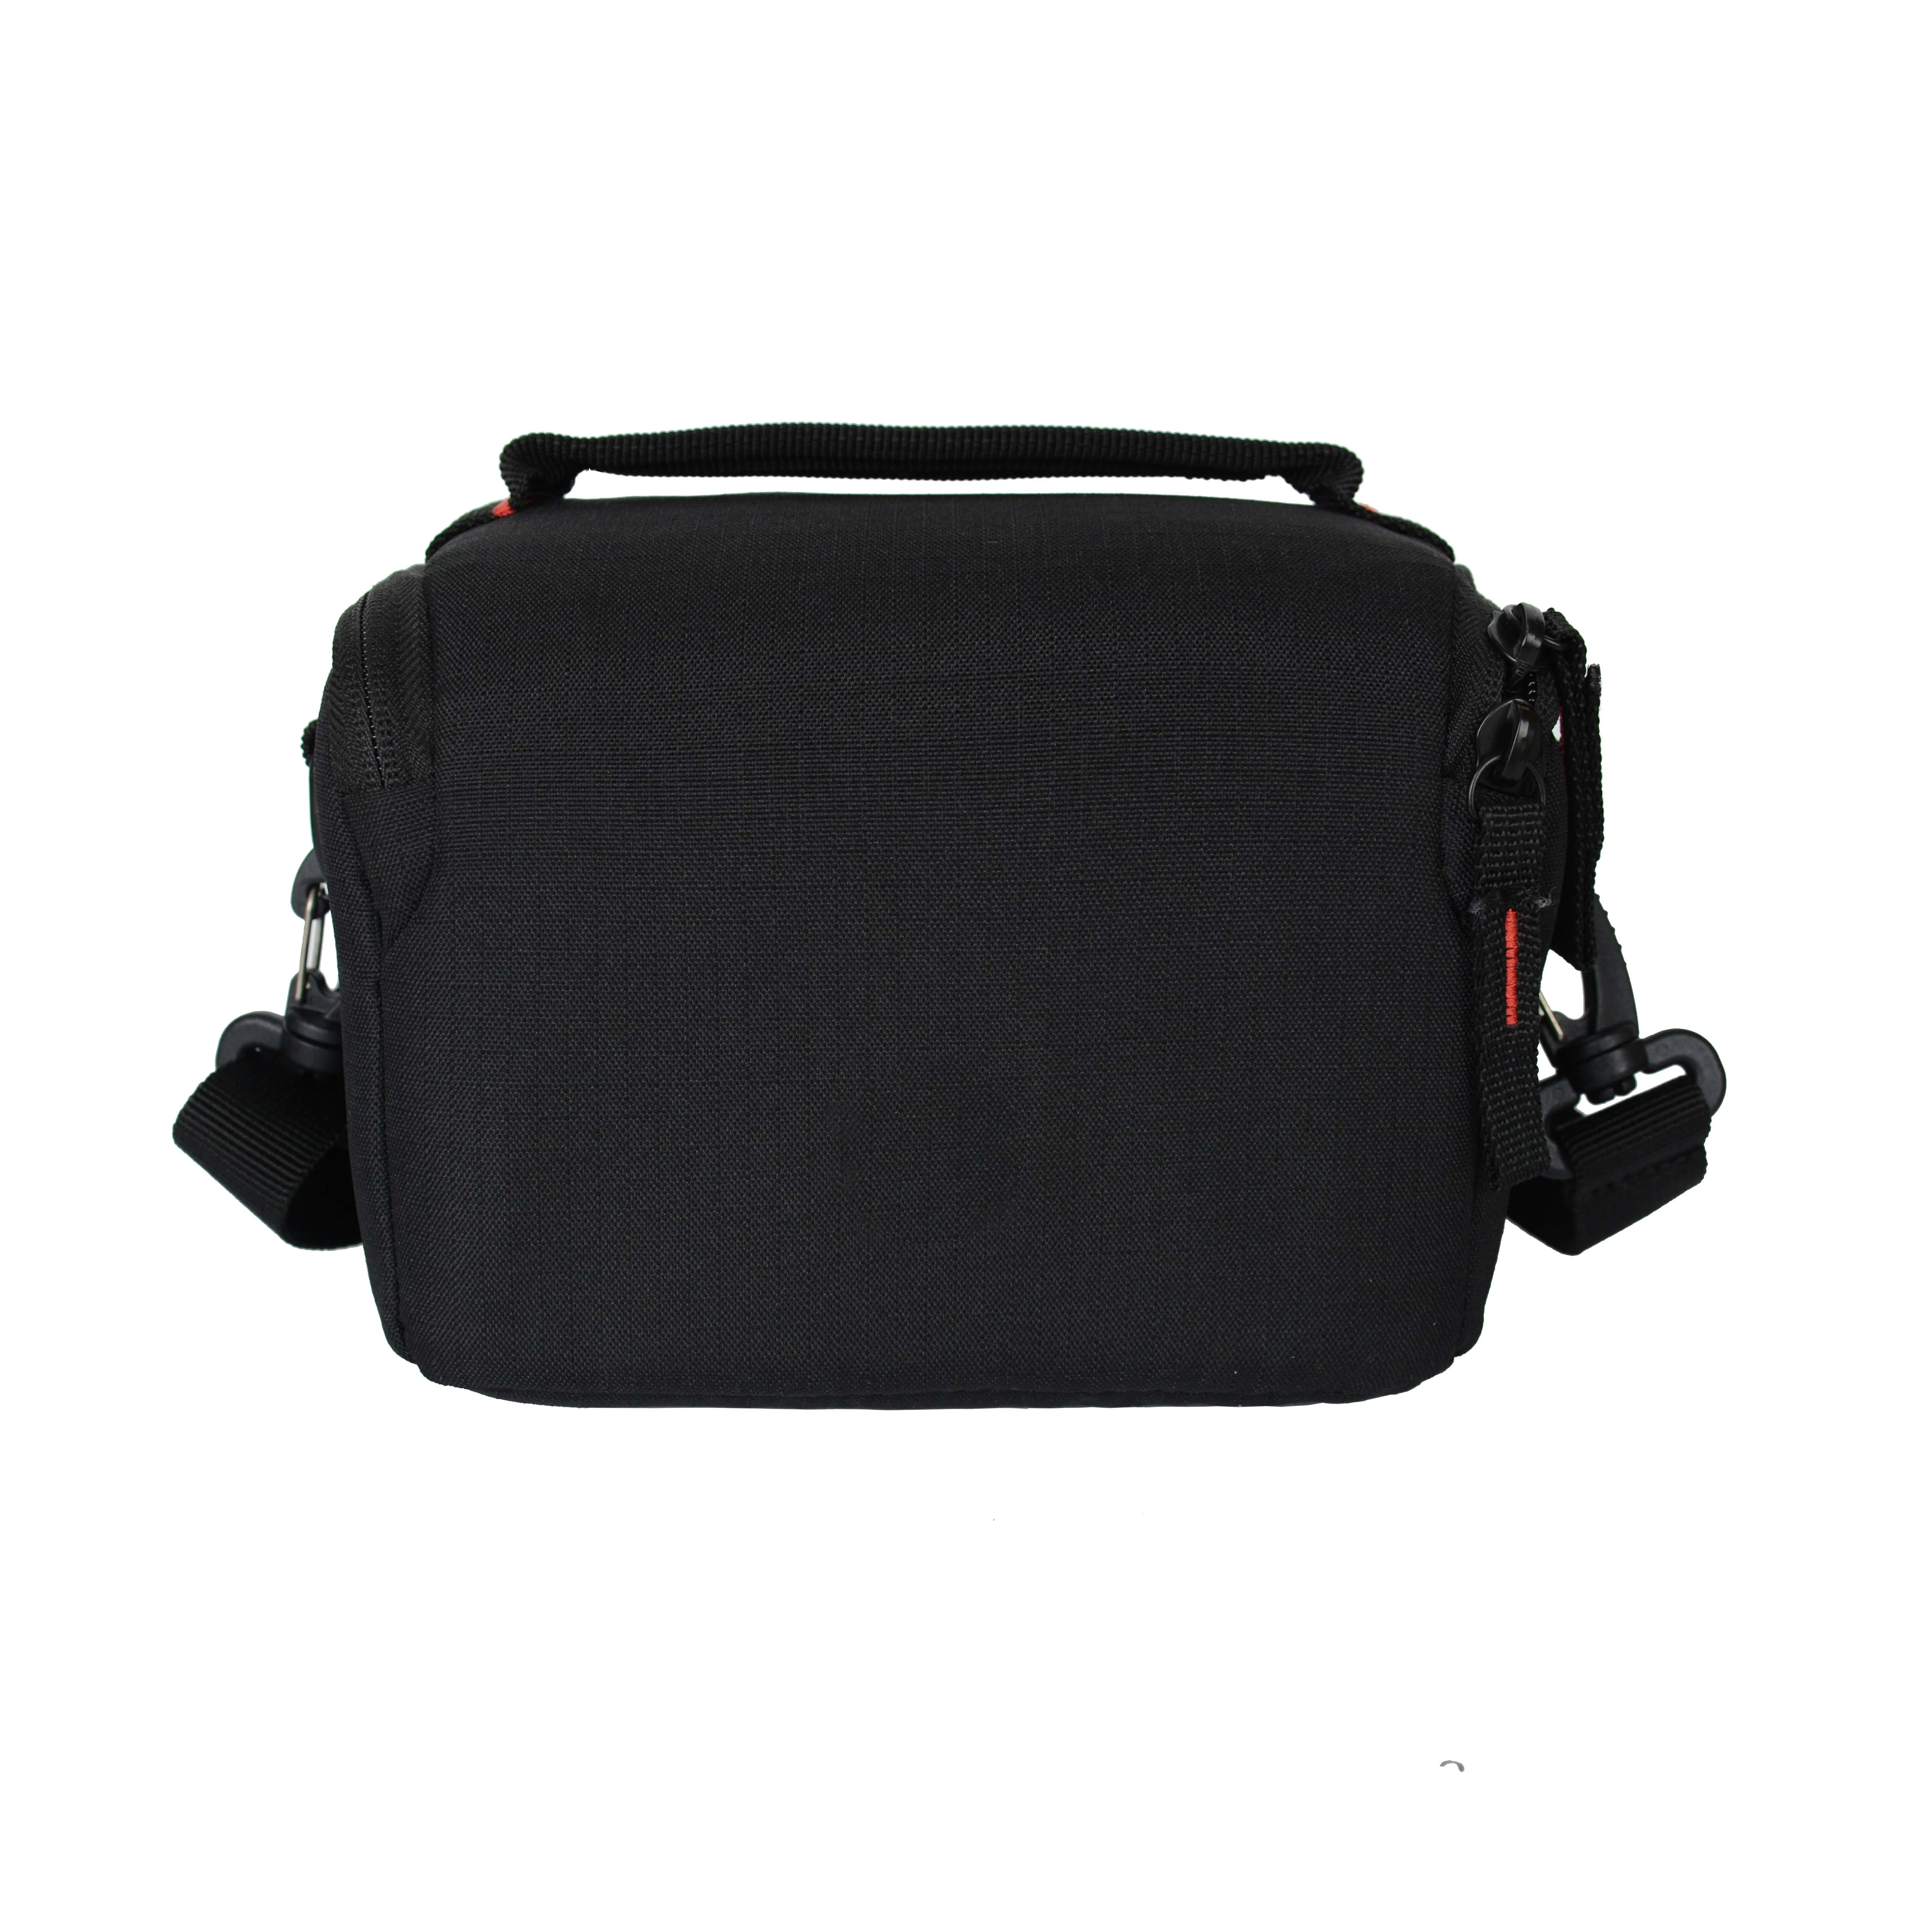 Bag Camera Soft Black Item Dslr Color Material Origin Type Designer Size Place Model Polyester